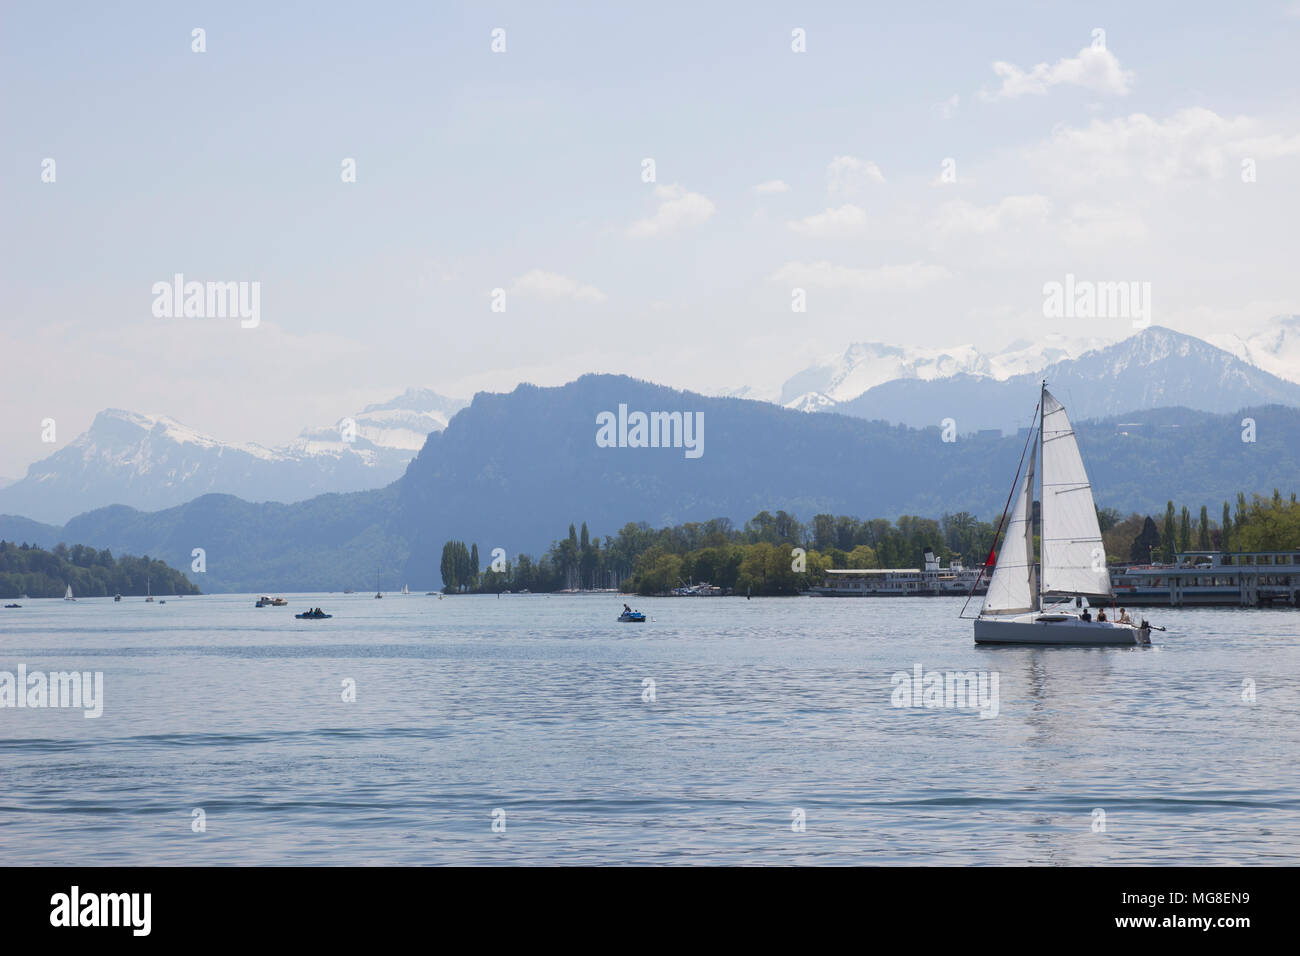 Navire en face de montagnes des Alpes couvertes de neige pics sur le lac de Lucerne, Suisse centrale. Le bateau navigue le long du lac. Banque D'Images